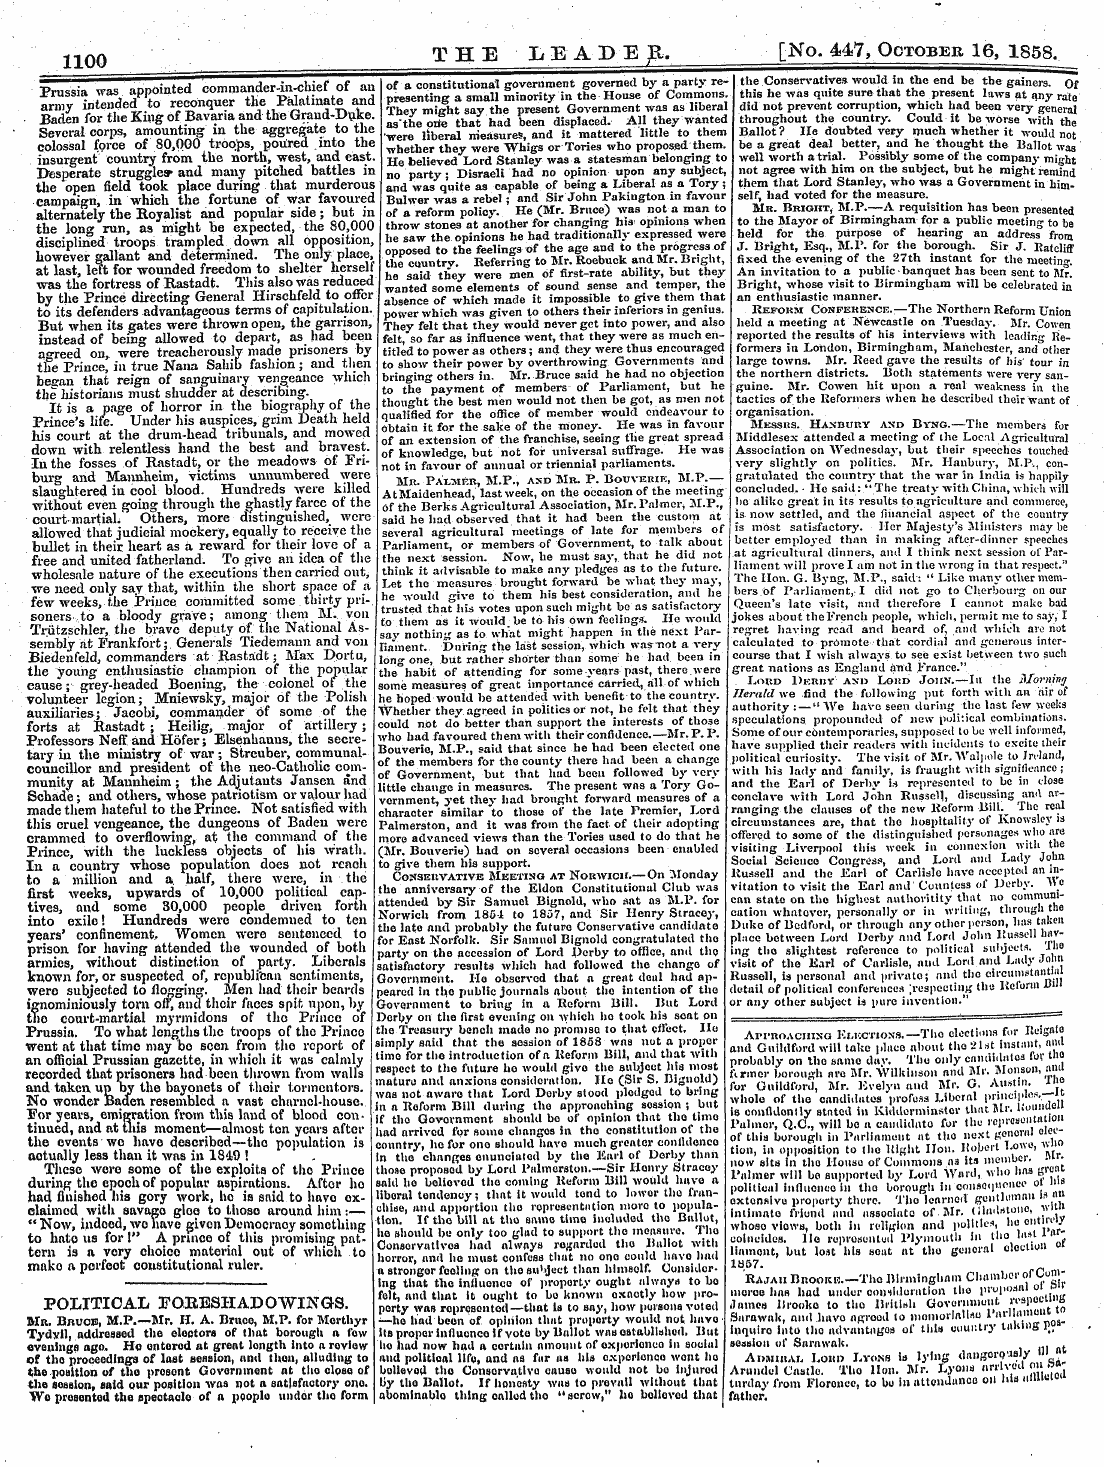 Leader (1850-1860): jS F Y, 2nd edition - ¦Pat Tftriat 17nt?17dt.A »Rk\Xrttvrcj Luwiiwaij Jju.J.Lxioll.Ajjuvvlj. \U«